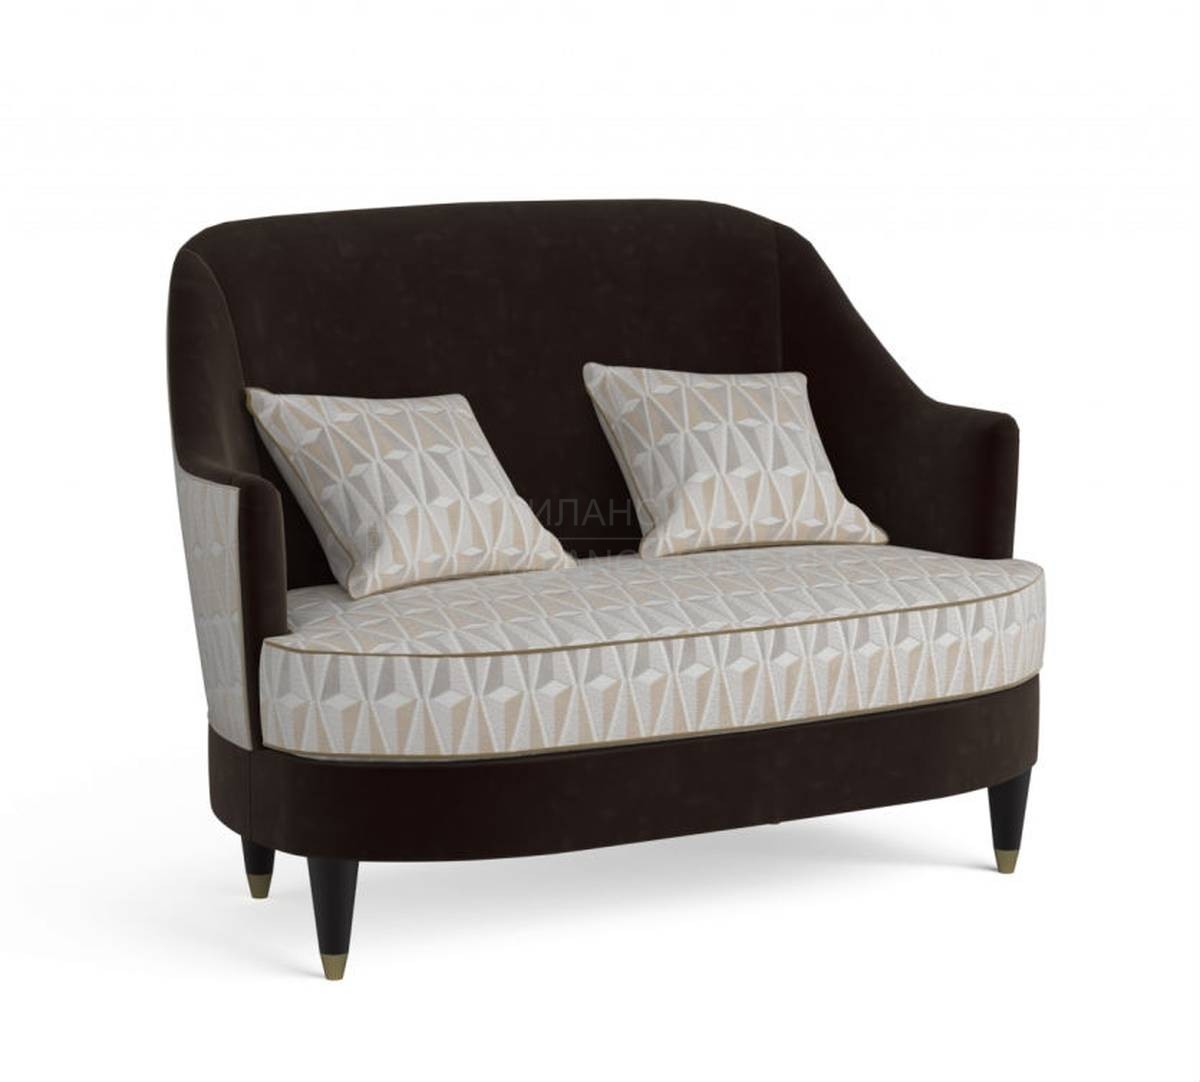 Прямой диван V019L sofa из Италии фабрики LCI DECORA